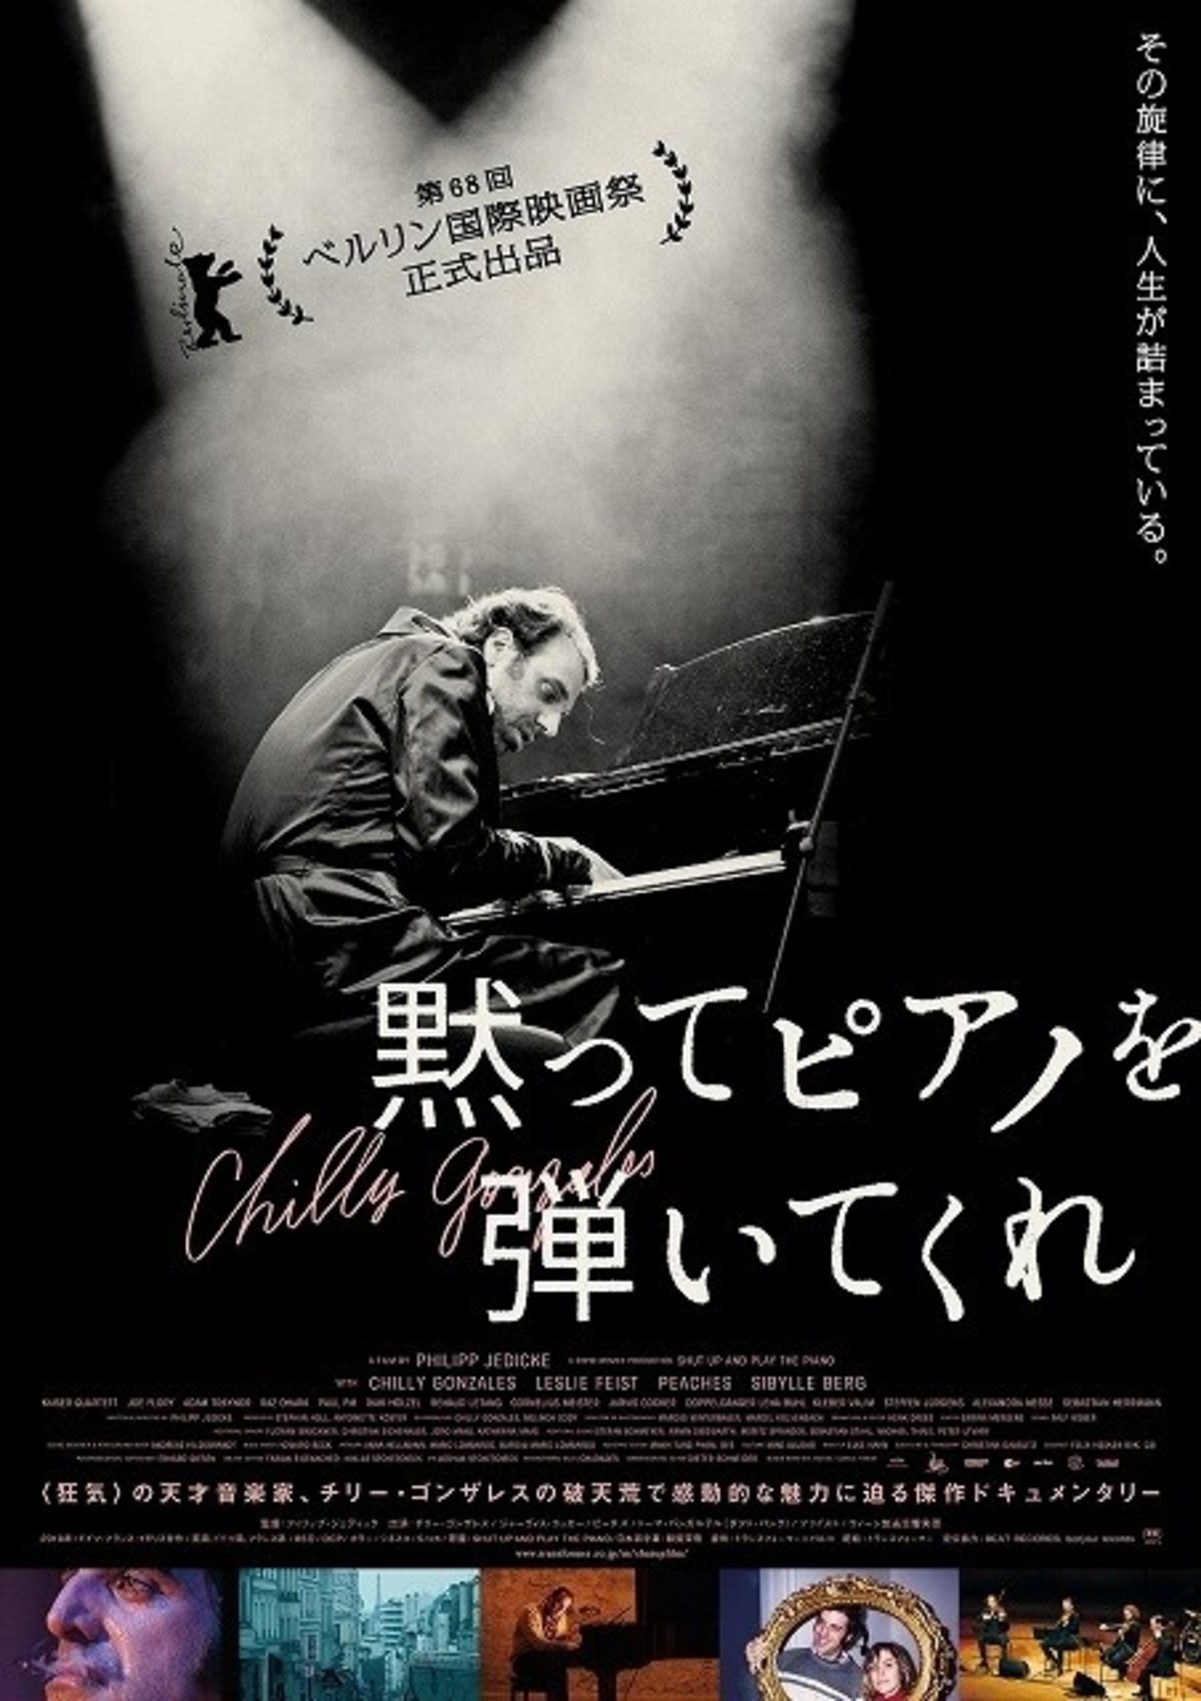 狂気の天才音楽家 チリー ゴンザレスに迫るドキュメンタリー映画 予告編完成 映画ニュース 映画 Com